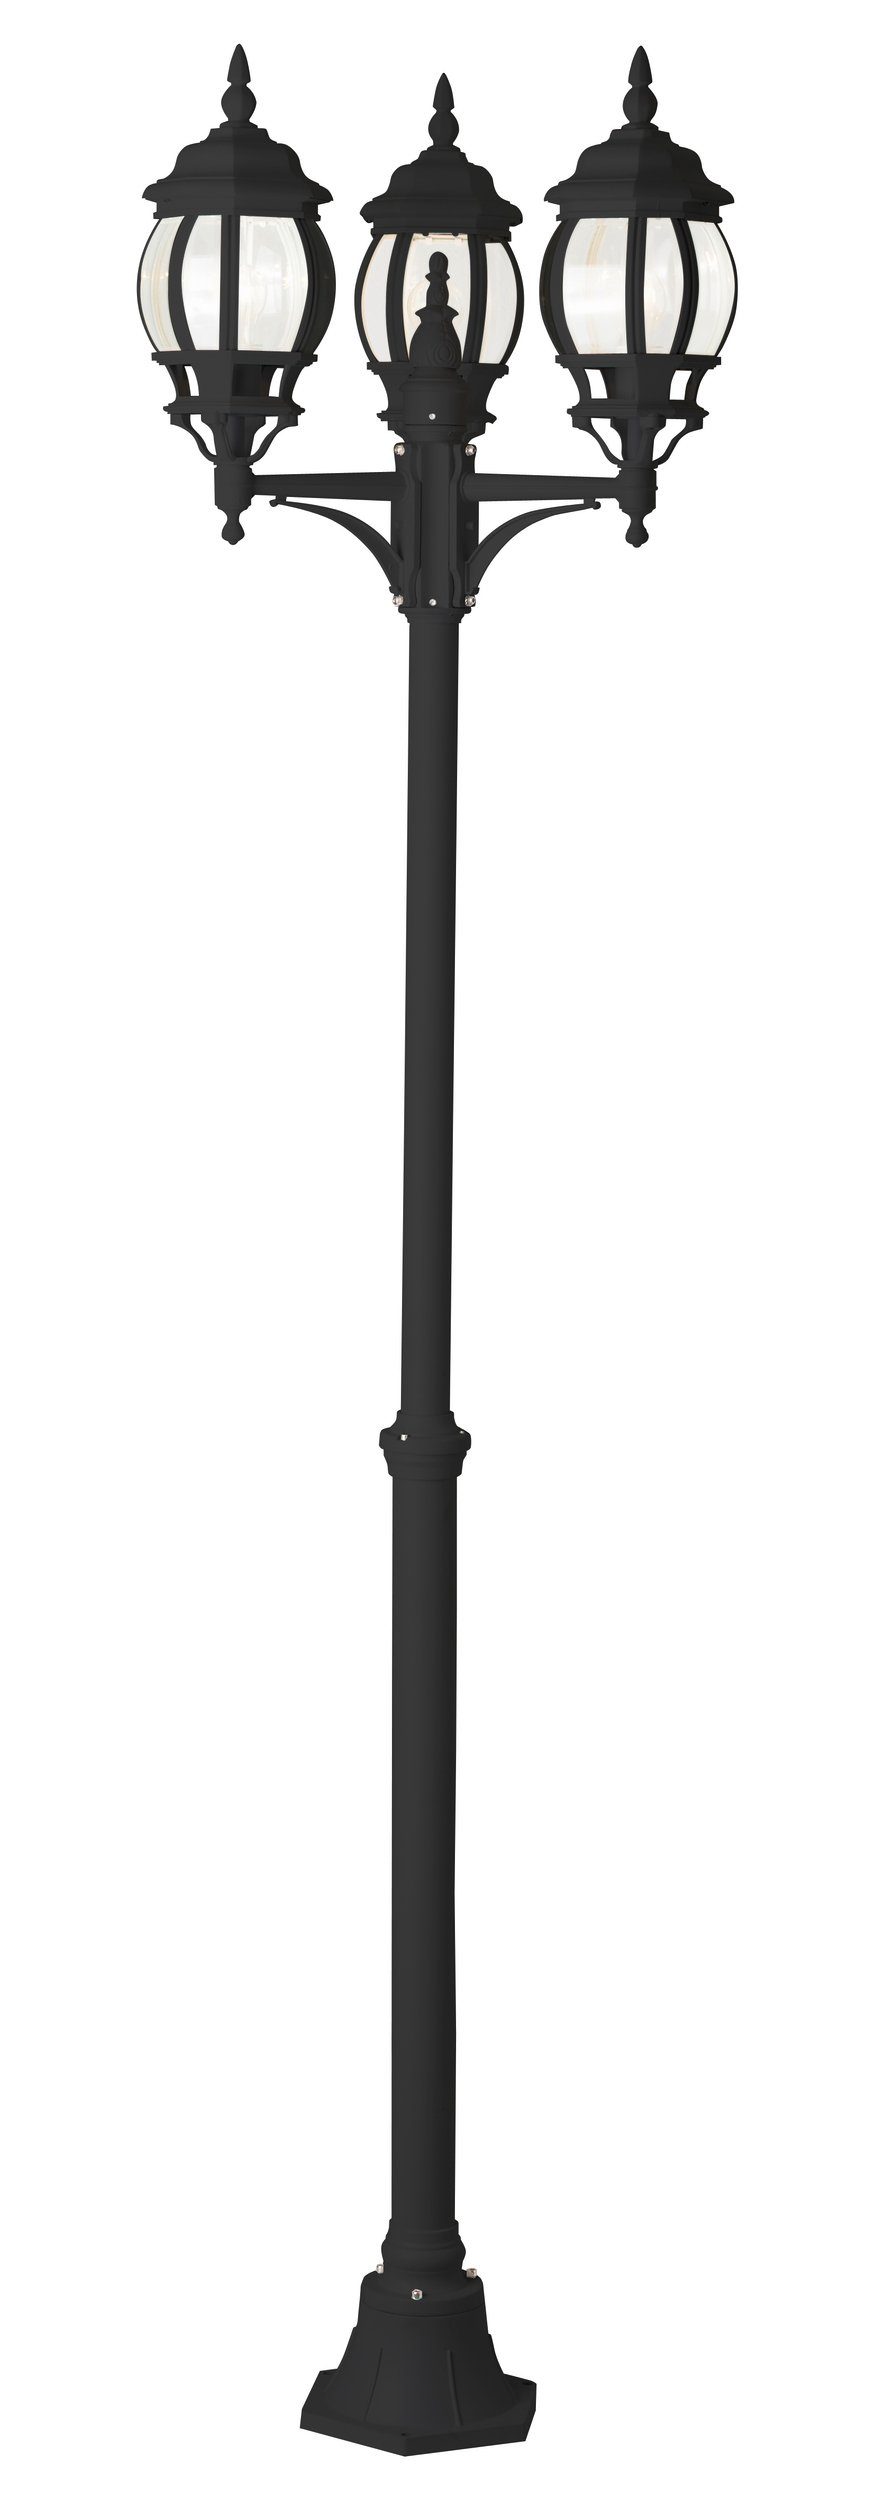 Lightbox Außen-Stehlampe, ohne Leuchtmittel, Kandelaber, 2,4 m Höhe, Ø 52 cm, 3 x E27, max. 60 W, IP23, schwarz | Standleuchten